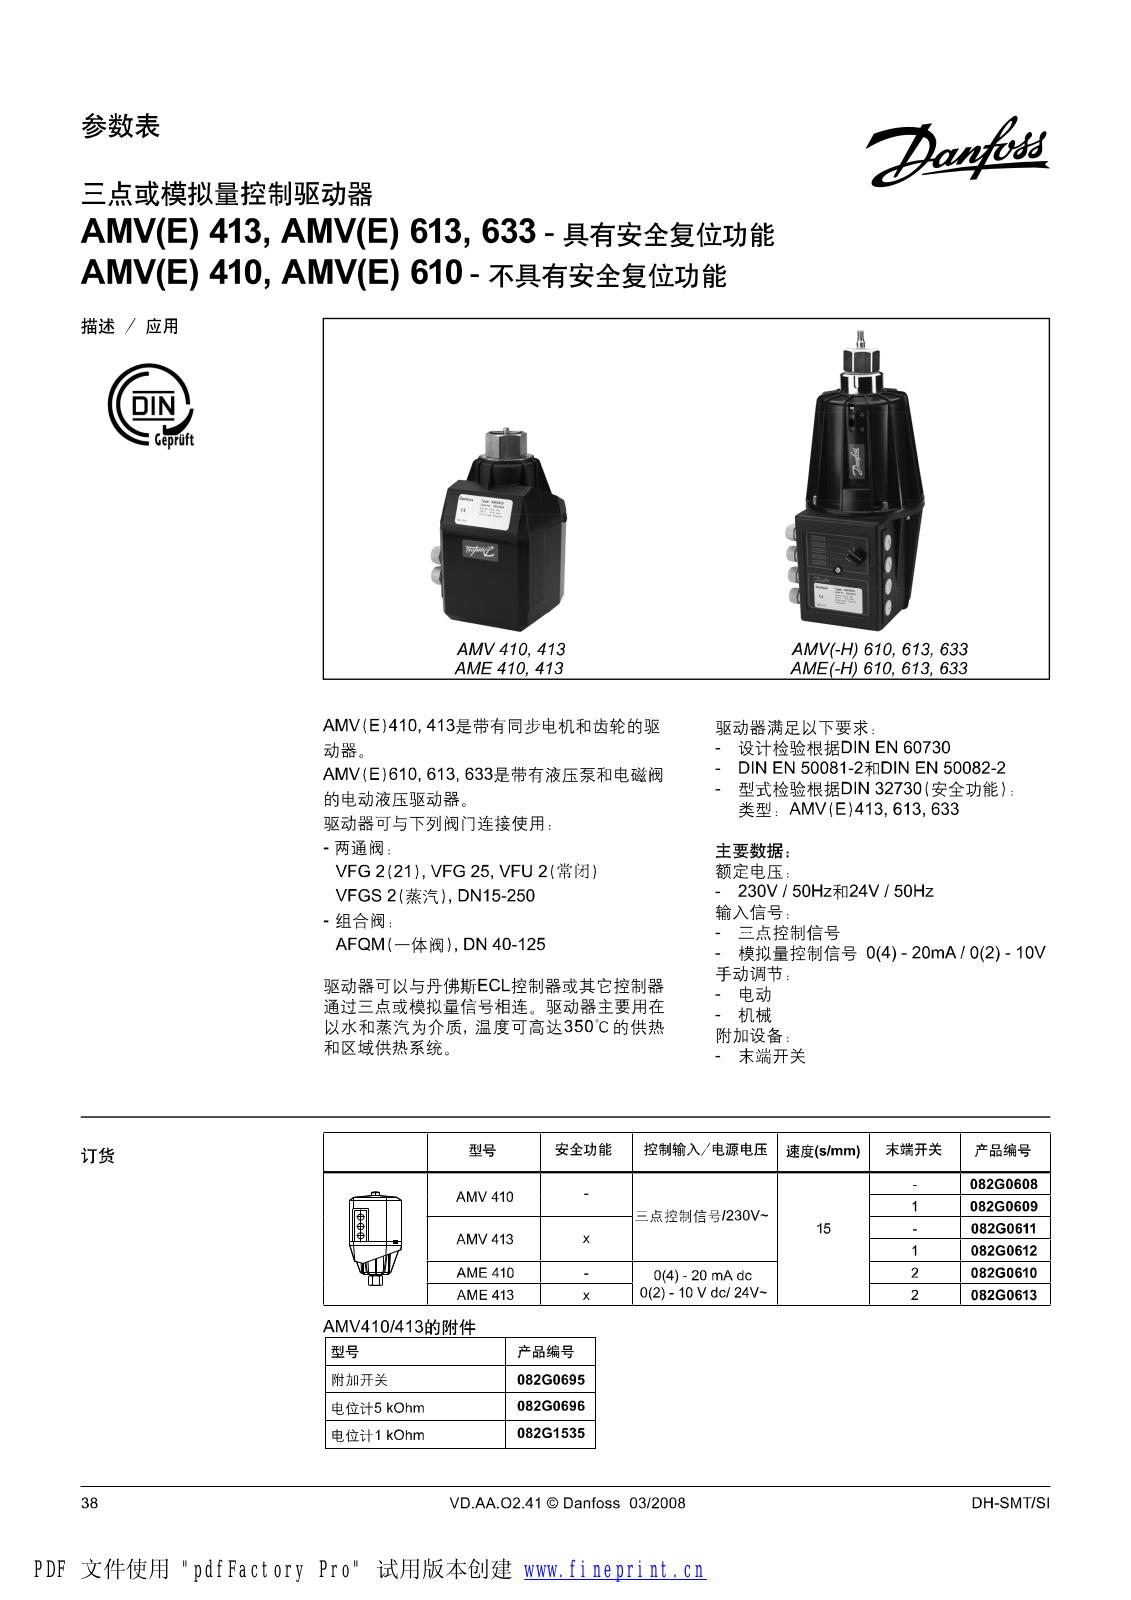 Danfoss AMV(E) 413, AMV(E) 613, AMV(E) 633, AMV(E) 410, AMV(E) 610 Data sheet